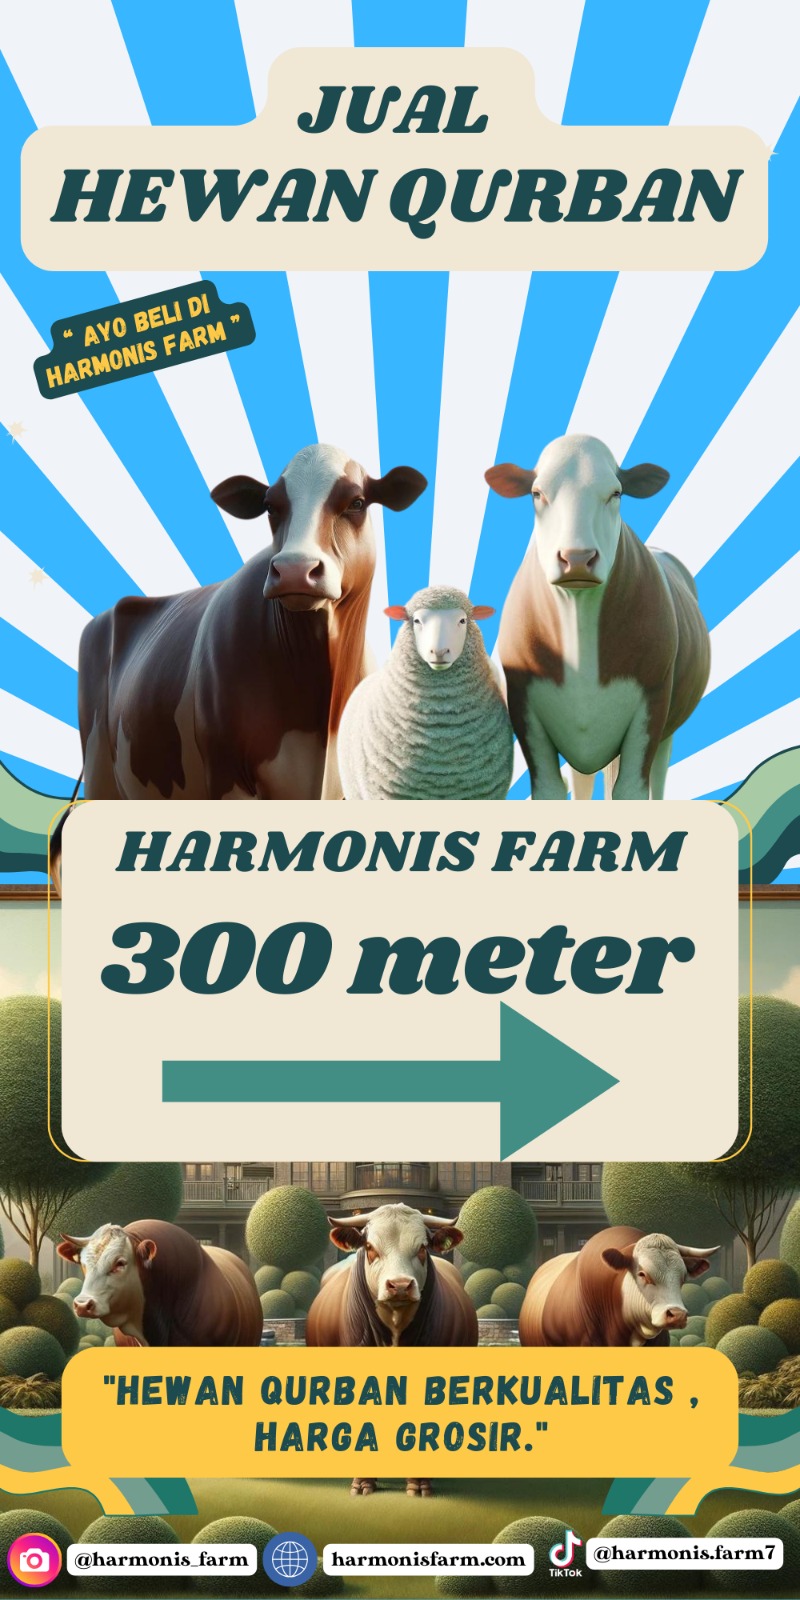 Harmonis Farm Menyediakan Hewan Qurban Dari Kambing, Domba dan Sapinya Sangat Berkualitas